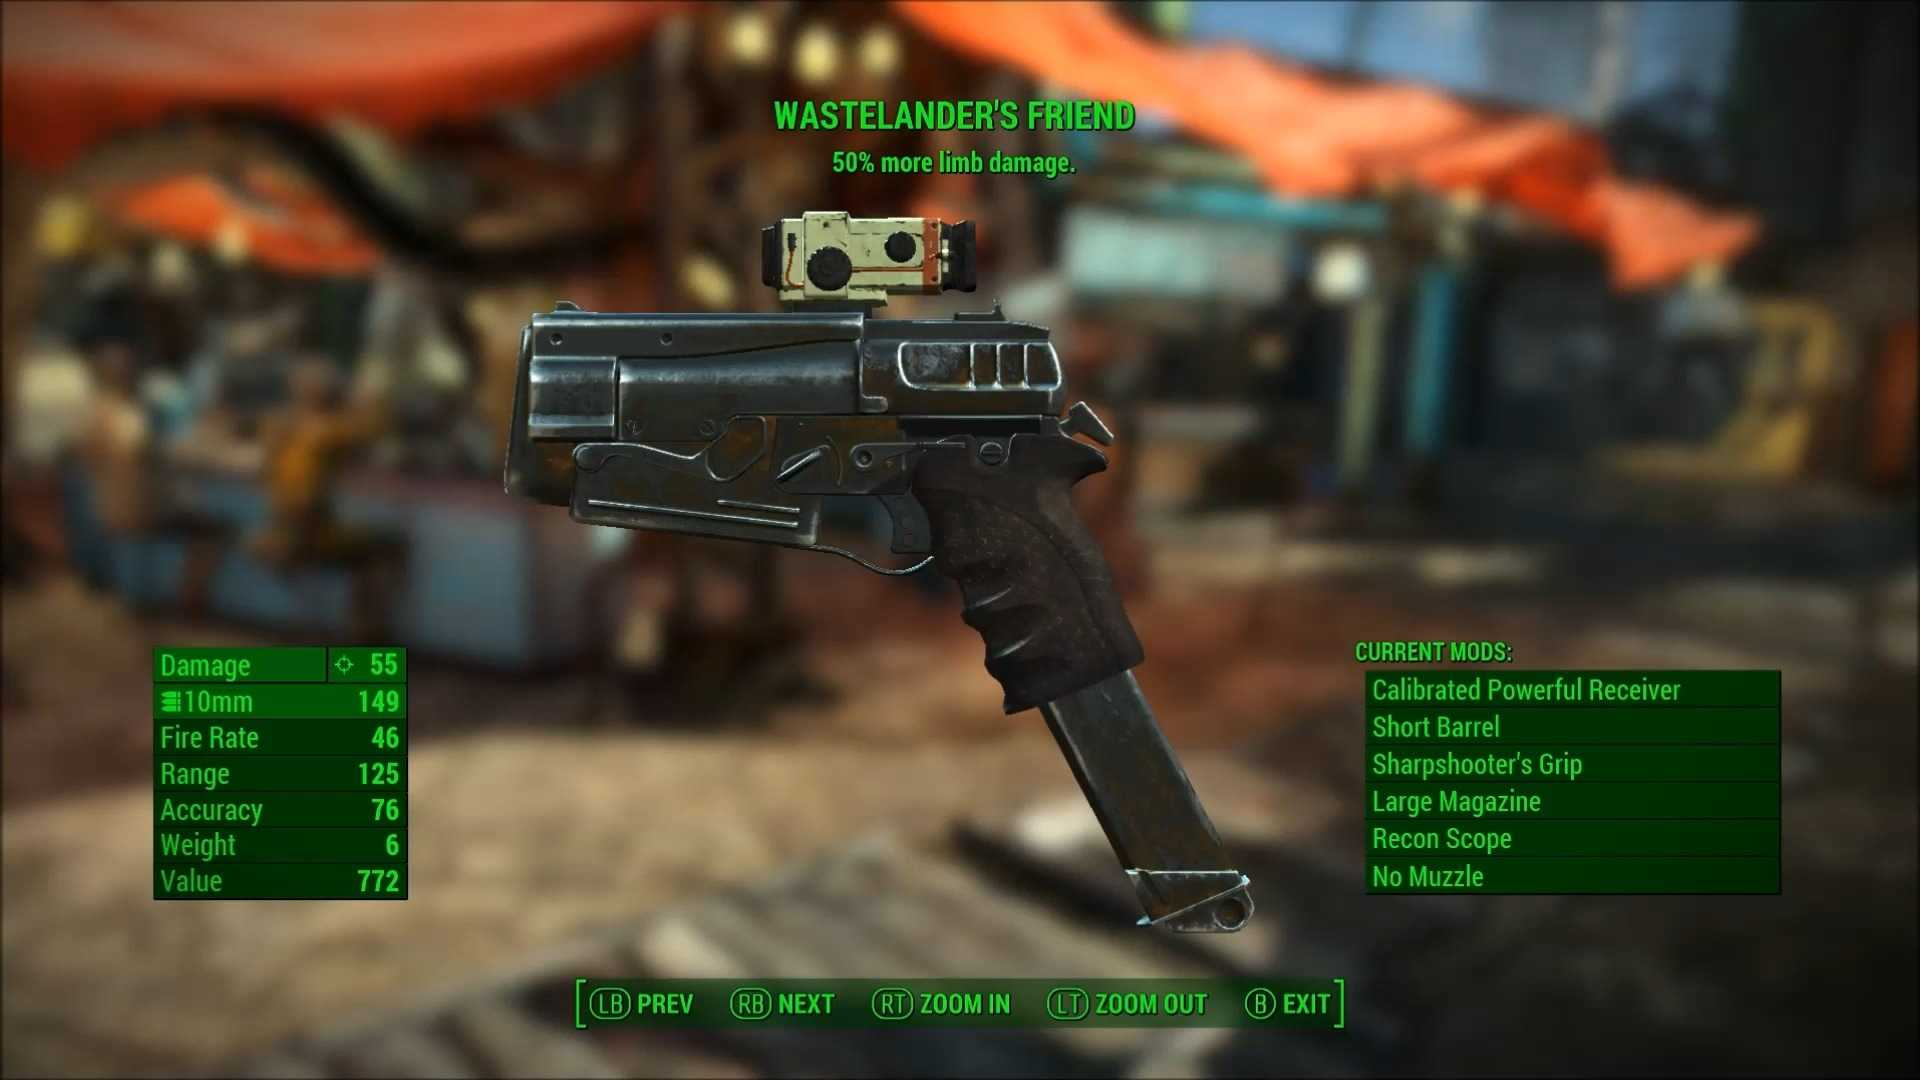 Wastelander's Friend in Fallout 4